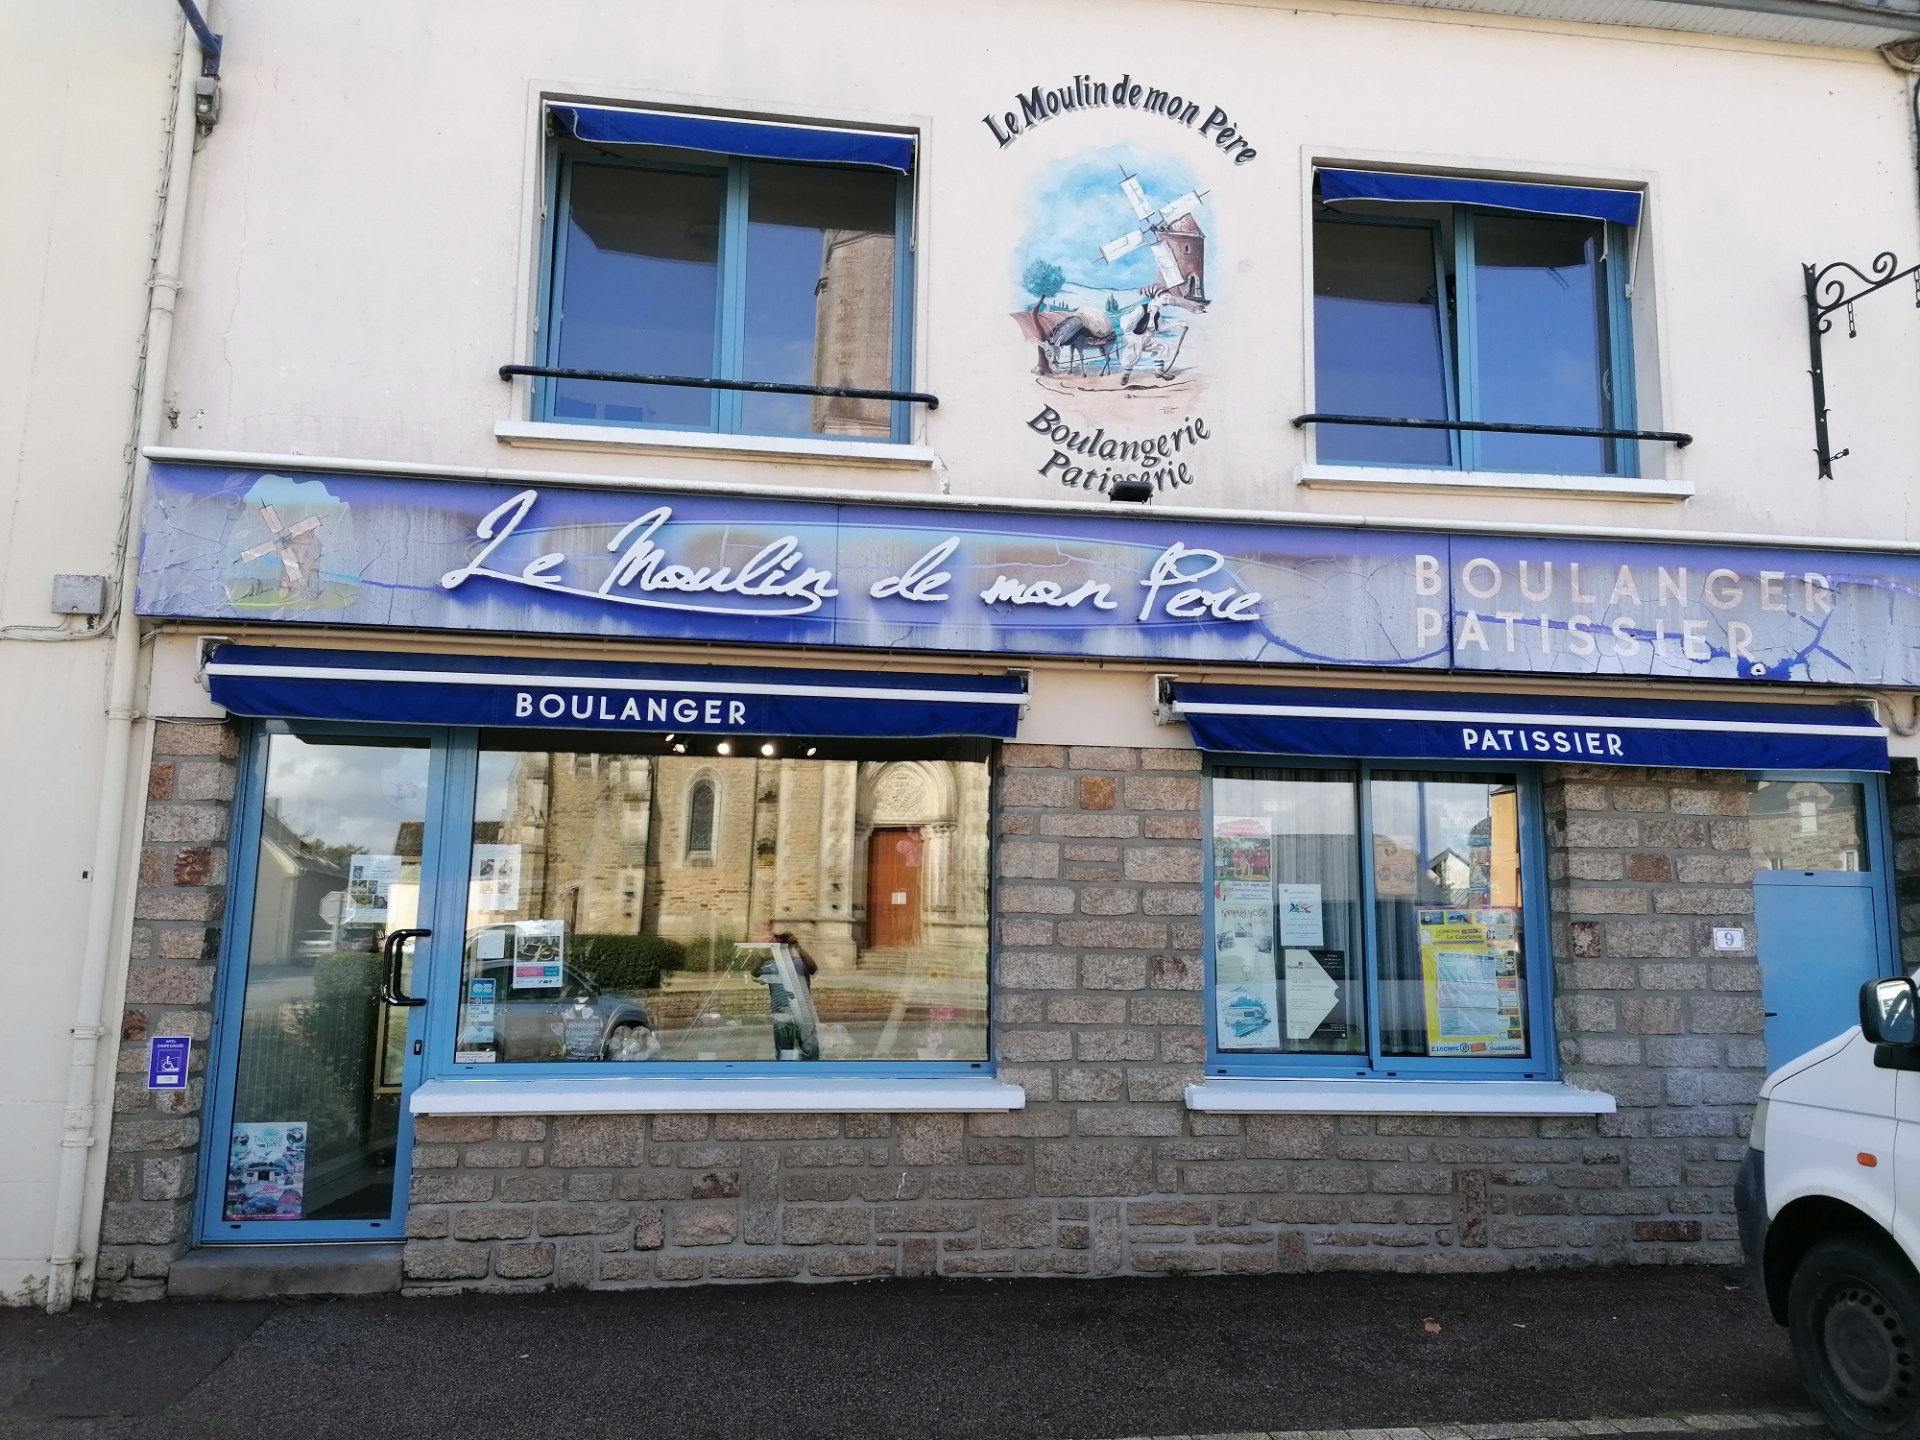 A vendre boulangerie pâtisserie, au alentours de la roche Bernard,dans un village de 2400 habitants. A 30km de la mer dans le Morbihan. A développer.